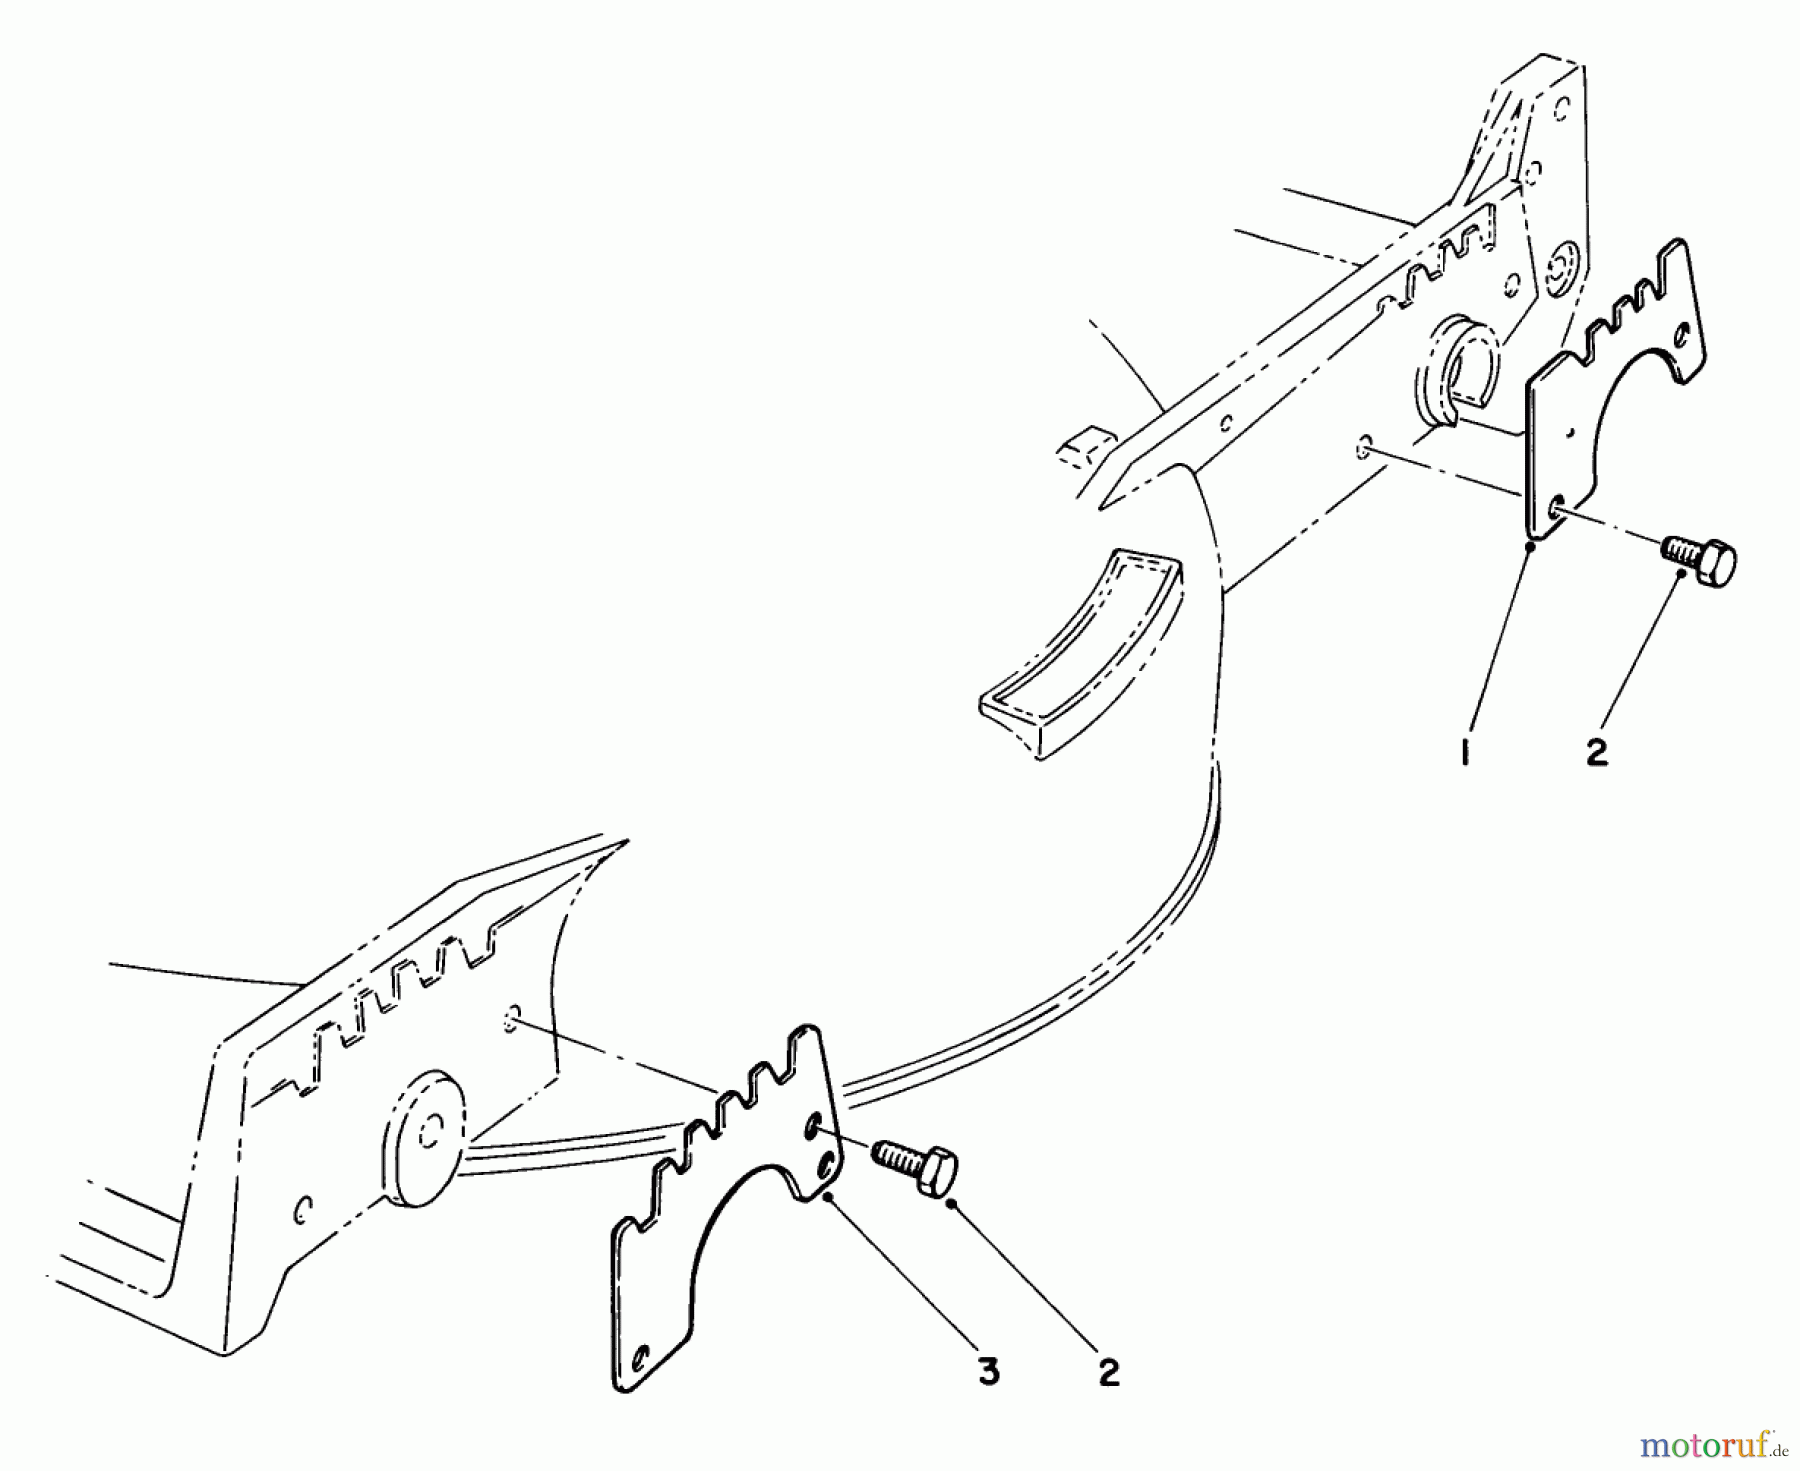  Toro Neu Mowers, Walk-Behind Seite 1 20810C - Toro Lawnmower, 1985 (5000001-5999999) WEAR PLATE KIT NO. 49-4080 (OPTIONAL)